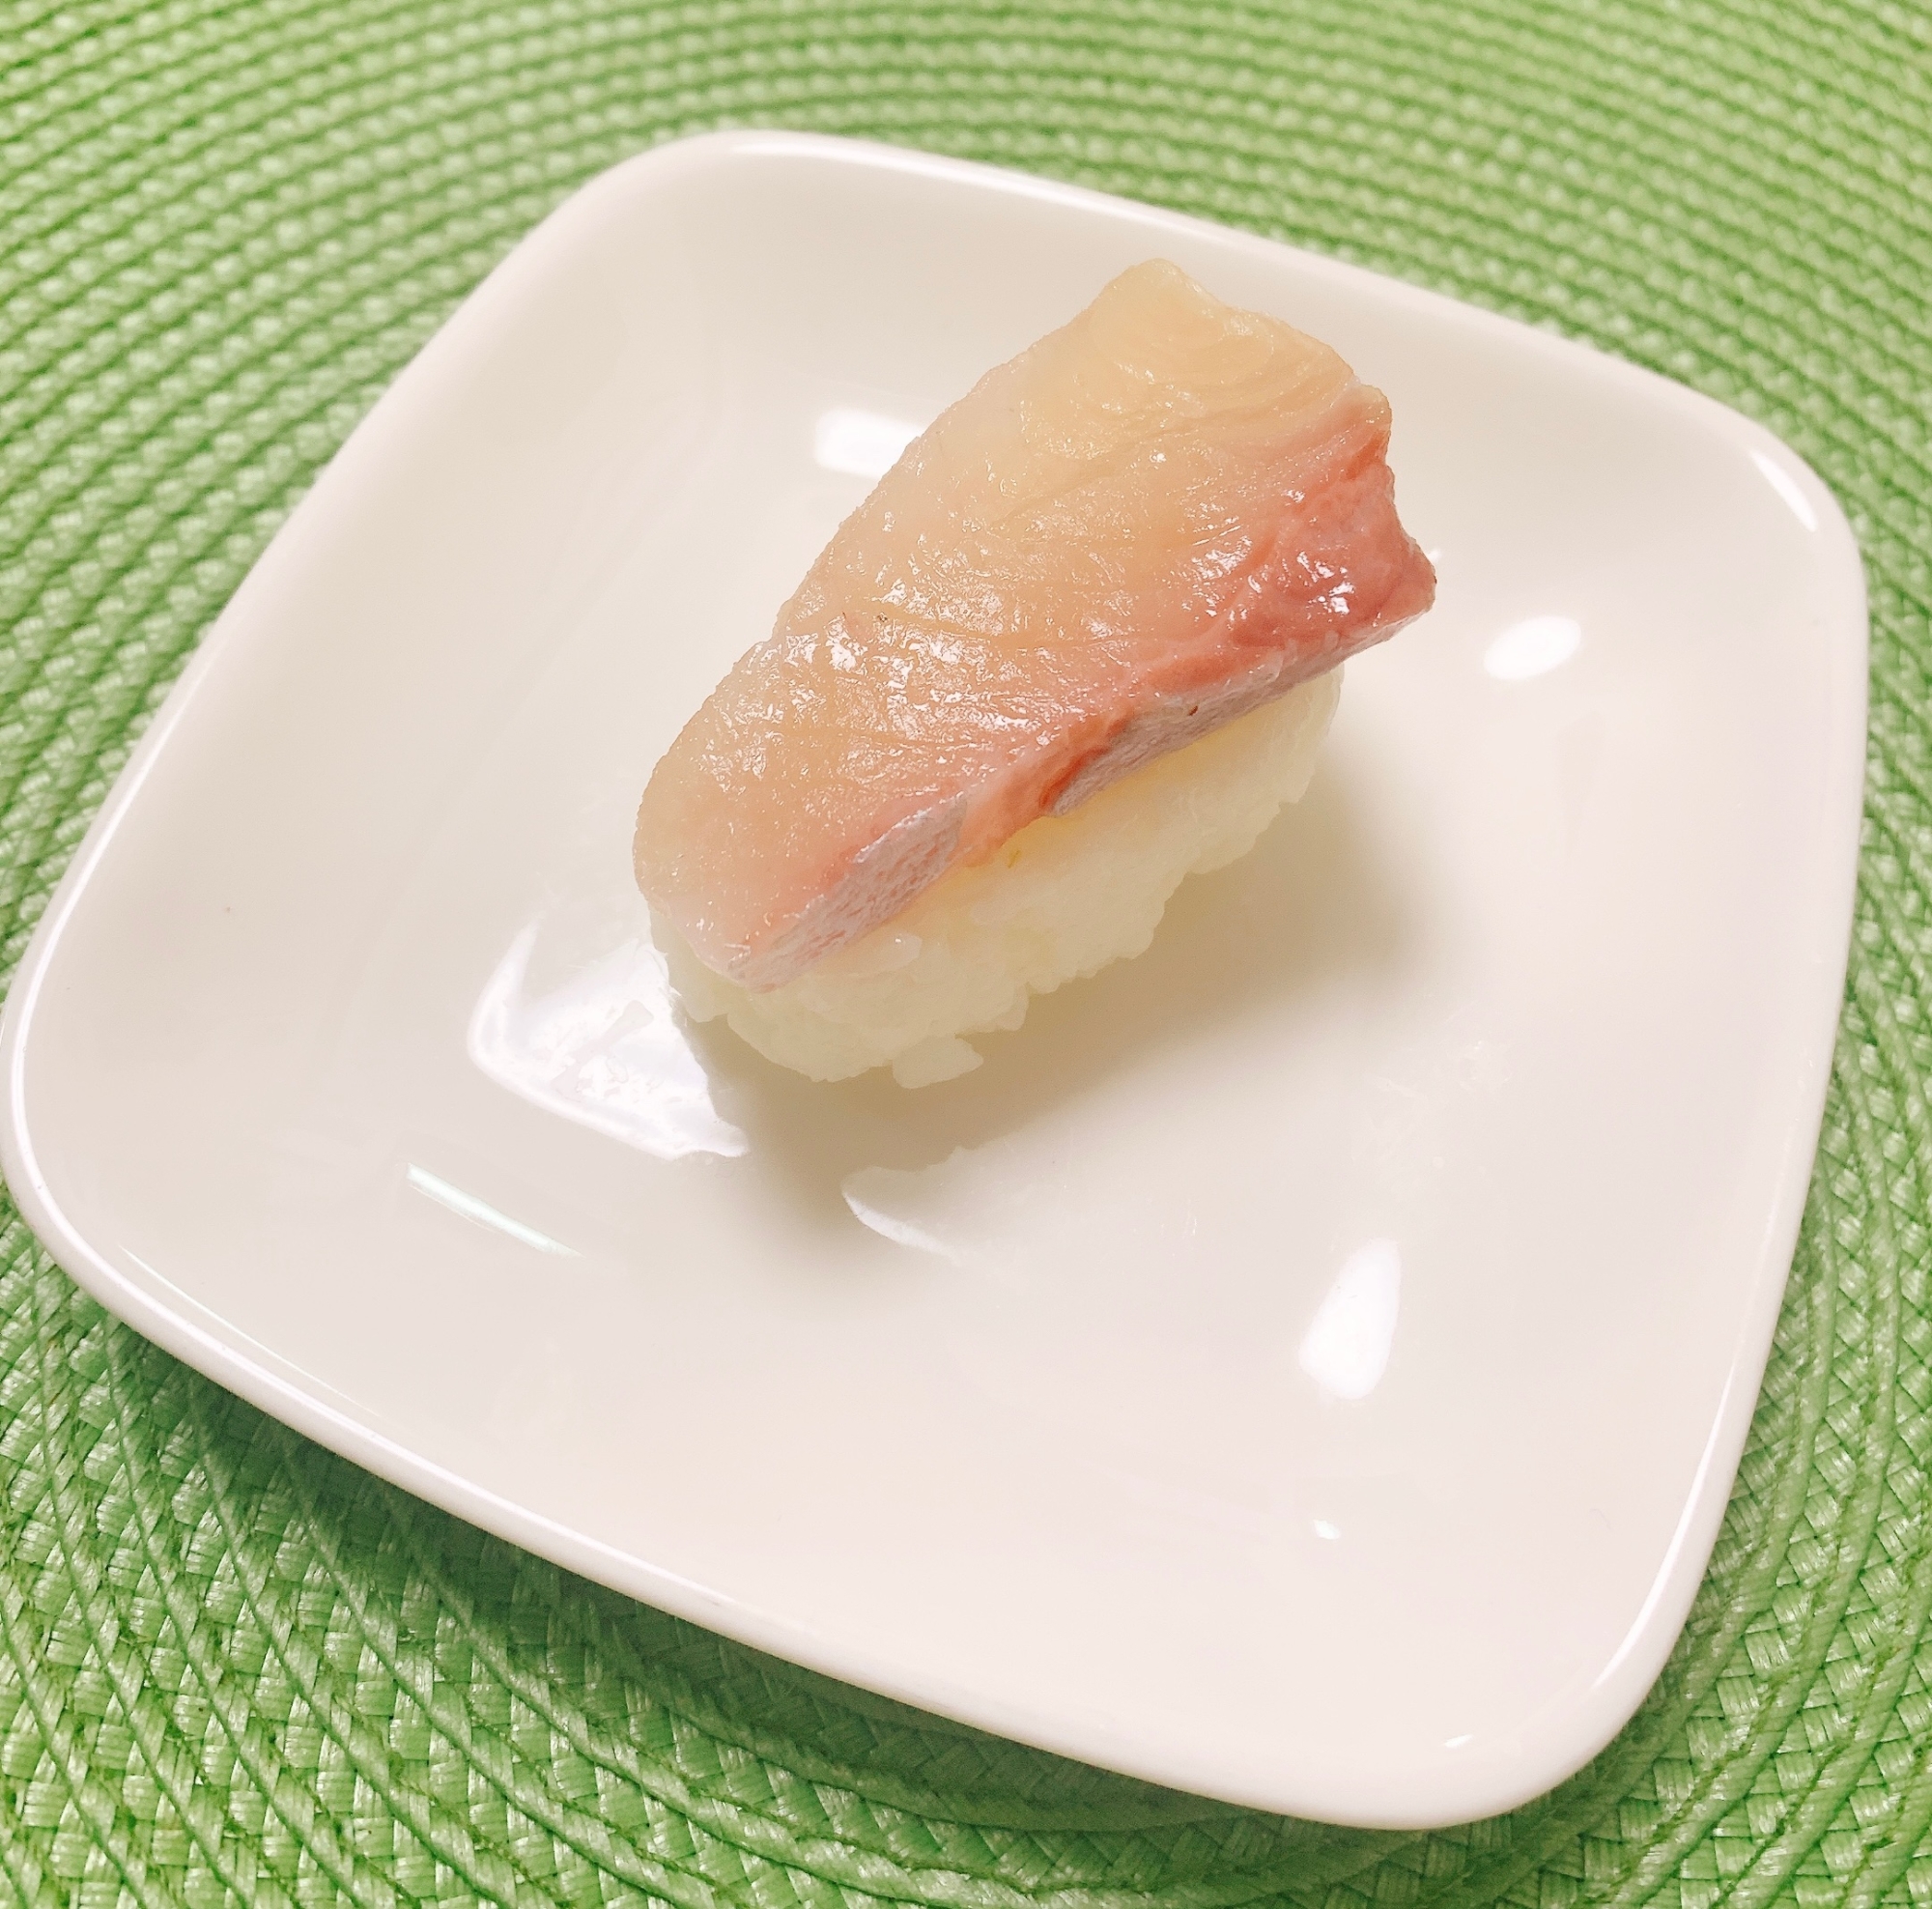 お刺身で♪柚子ごしょう寿司✧˖°